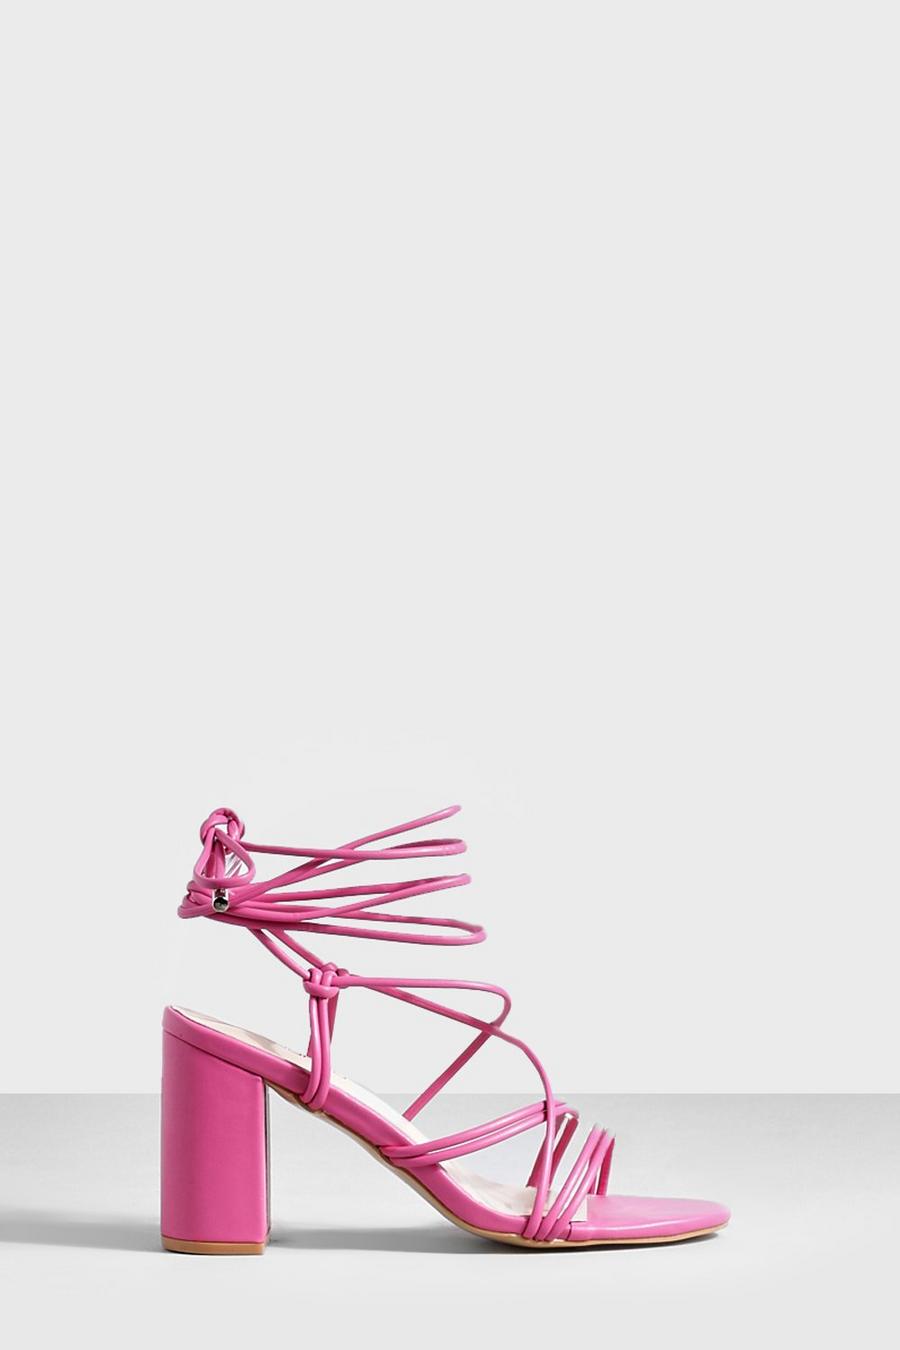 Sandalias con tacón grueso y tiras cruzadas, Pink